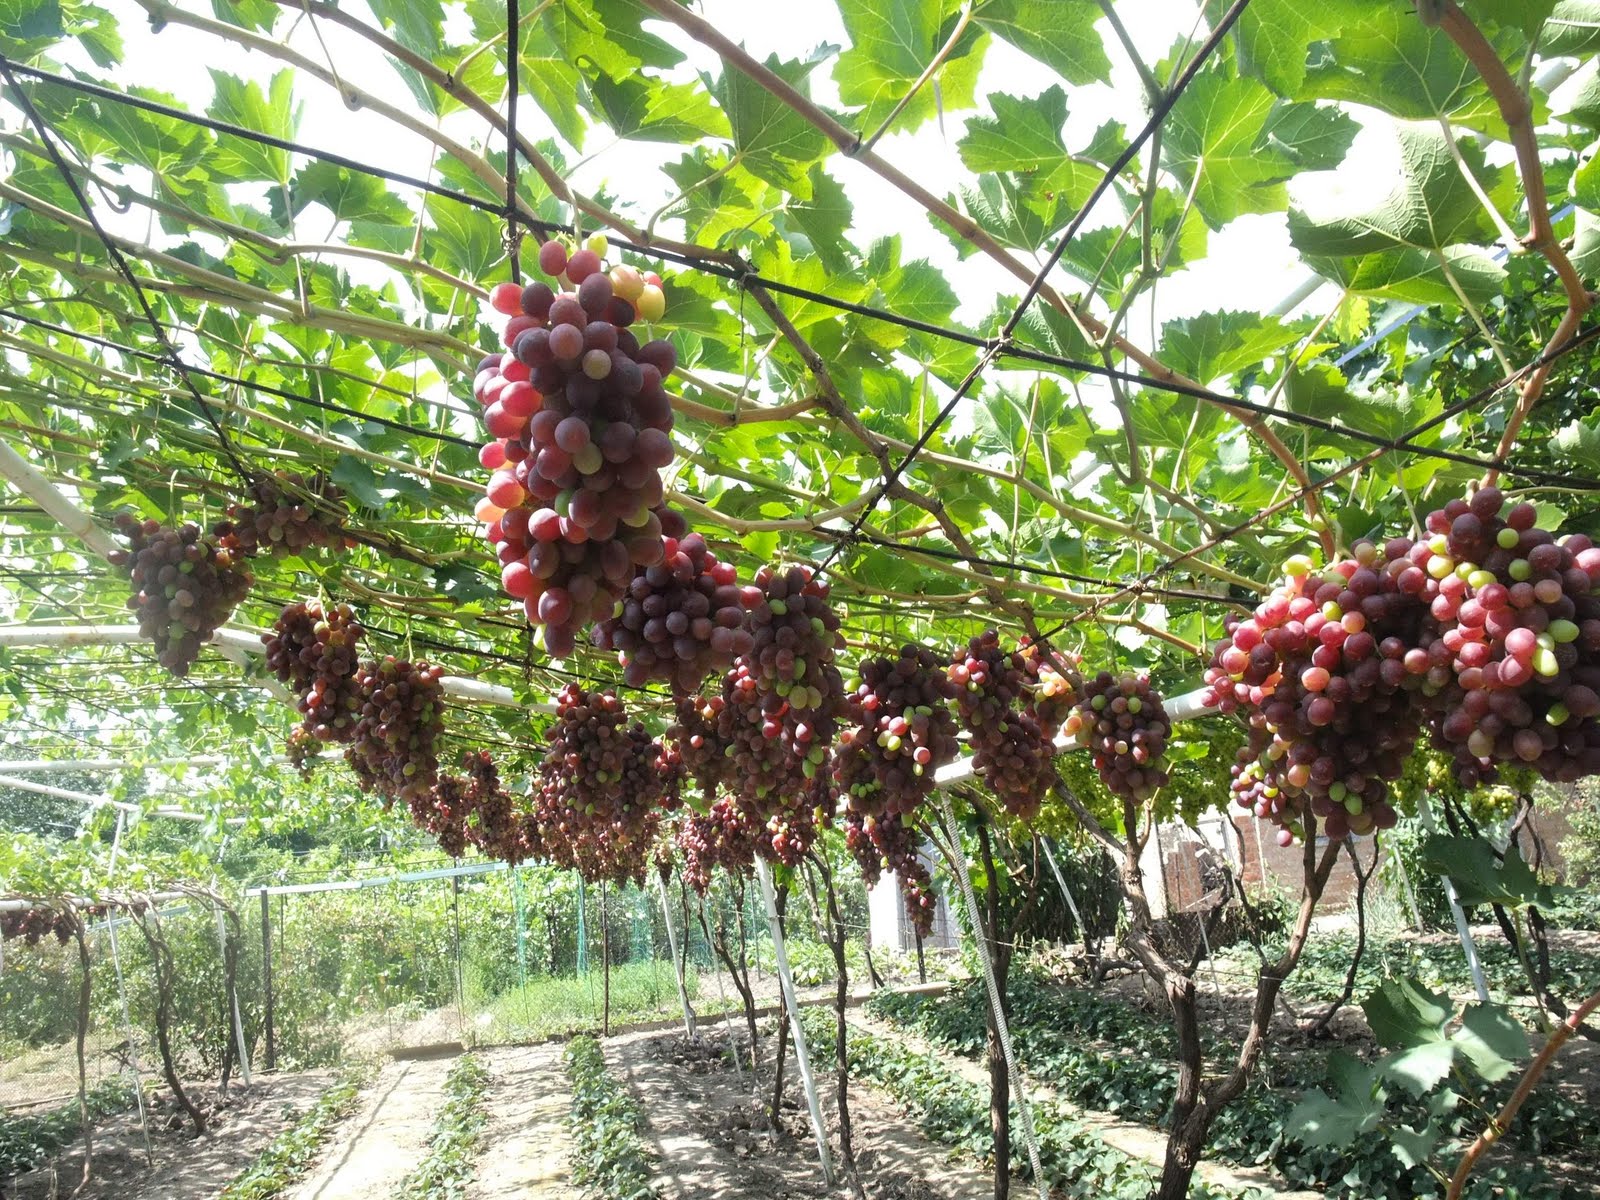 Шпалера для винограда своими руками на даче: виды и установка